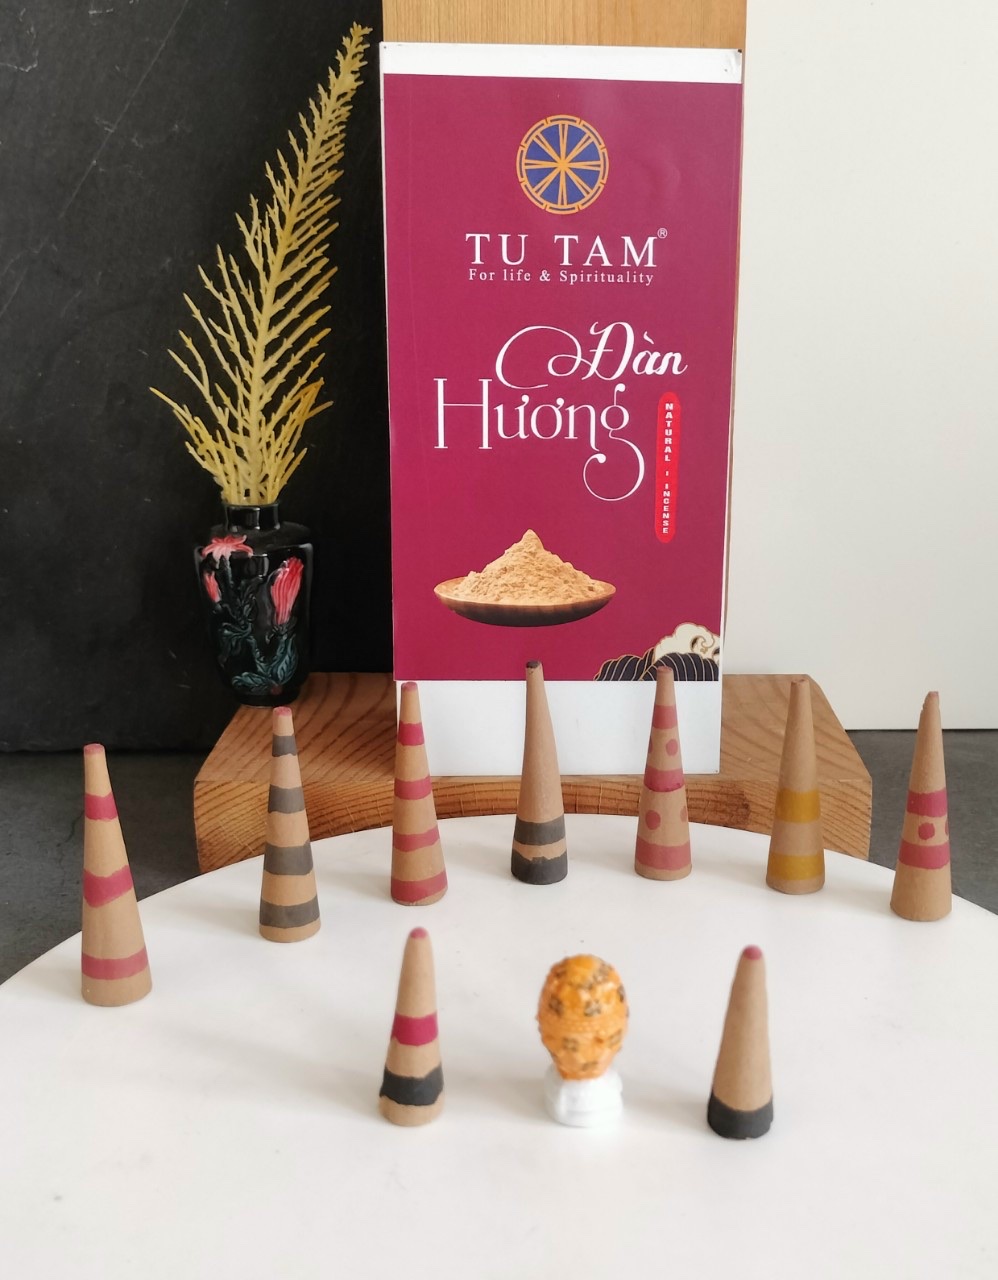 Tạo dấu ấn cá nhân với hương thơm riêng từ Tutam Incense House